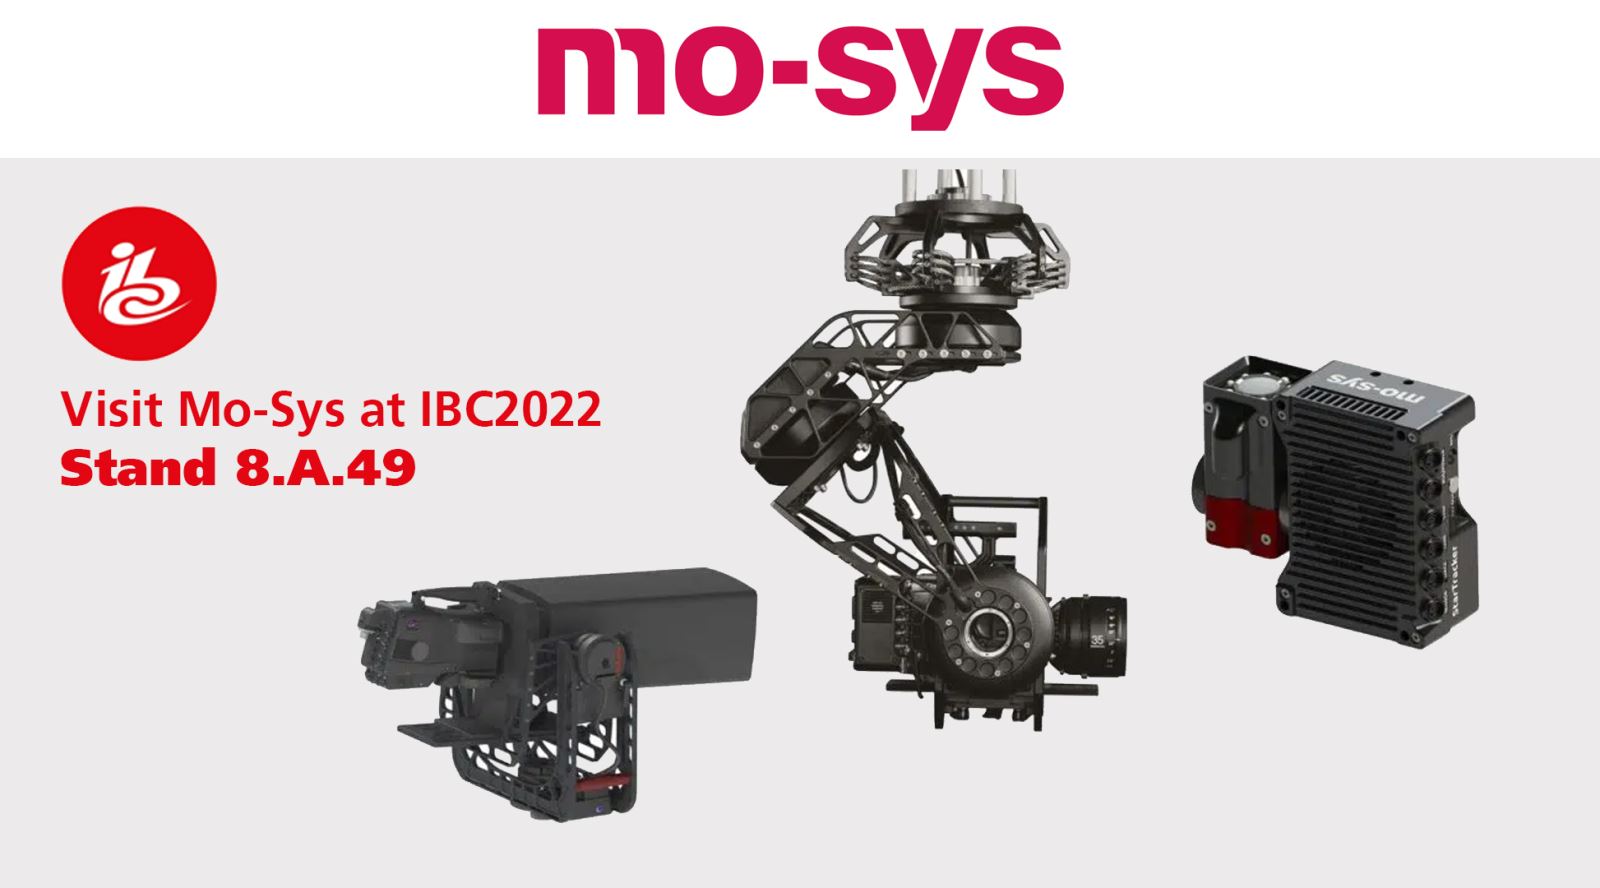 Visit Mo-Sys at IBC2022